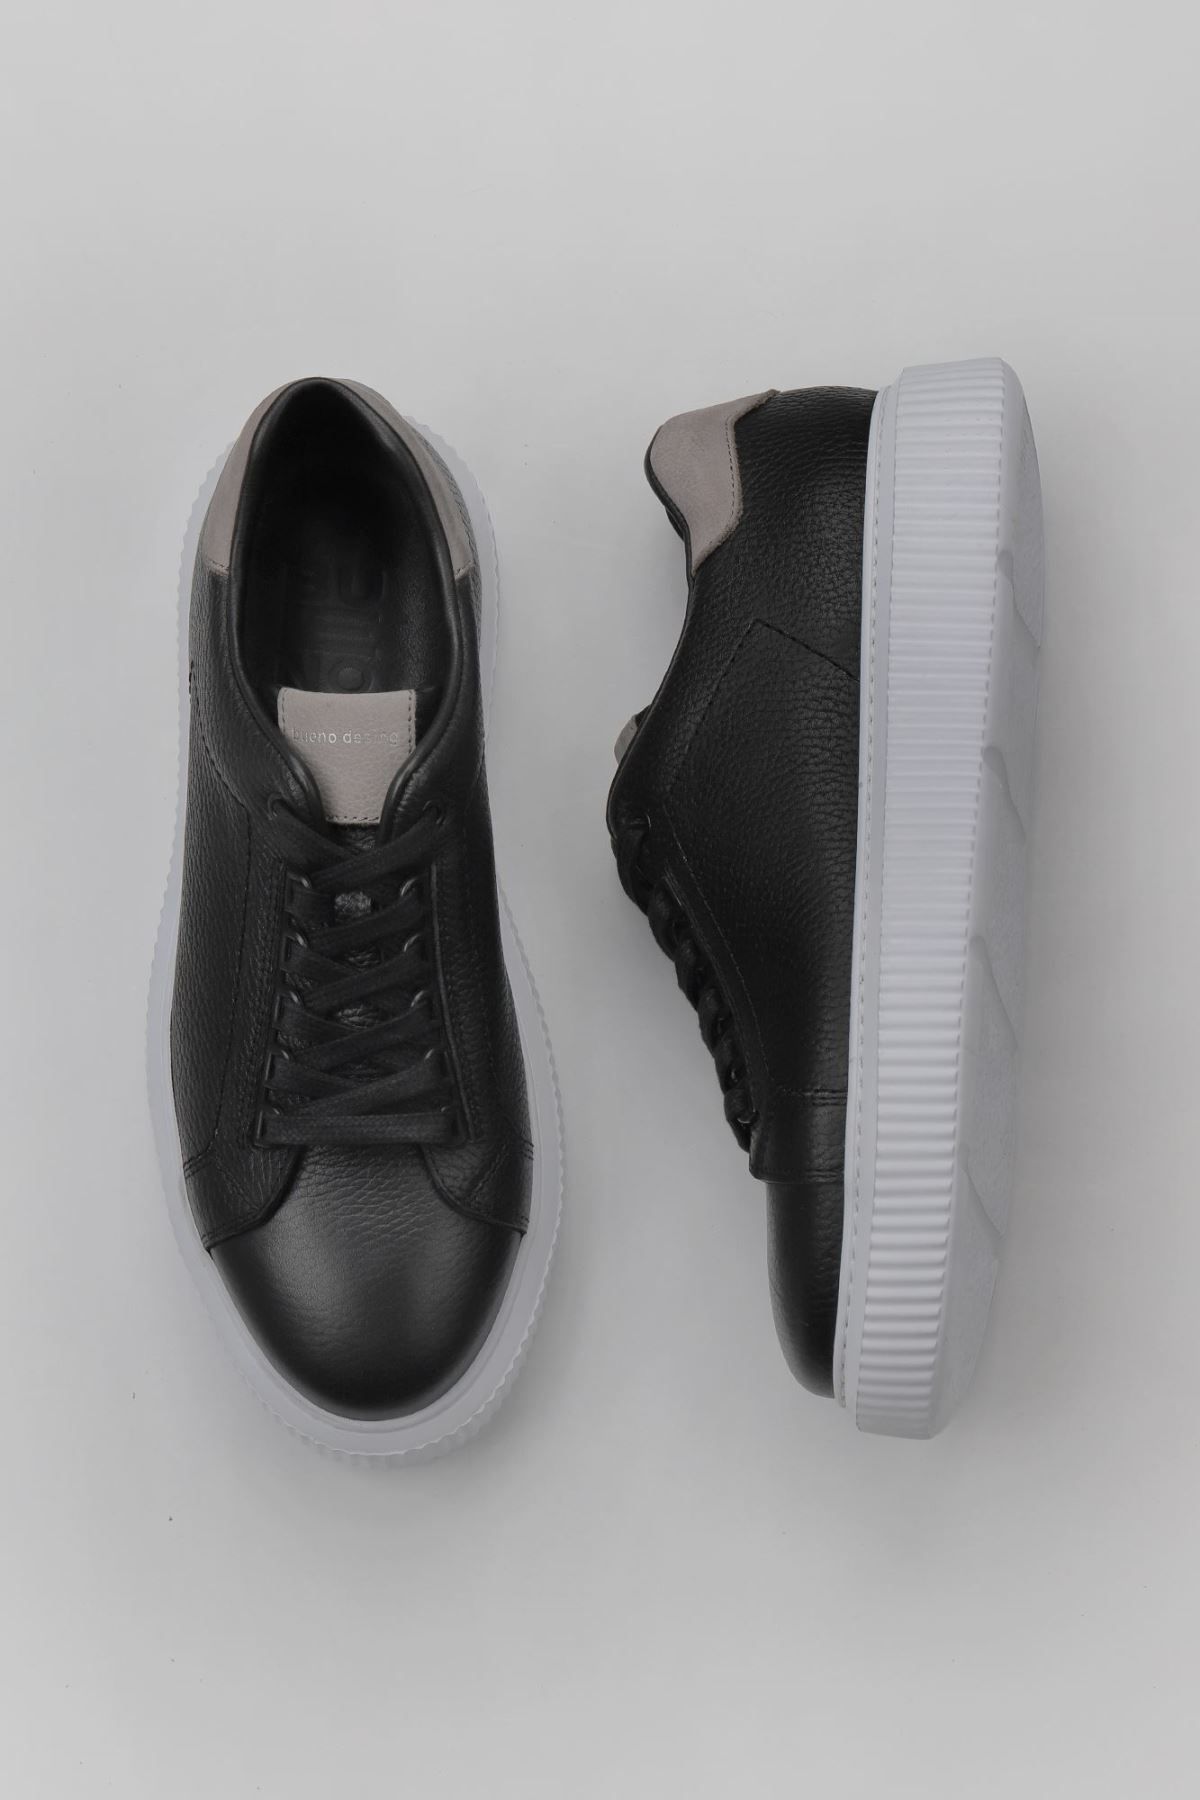 Bueno Shoes Siyah Flt Deri-gri Süet Erkek Spor Ayakkabı